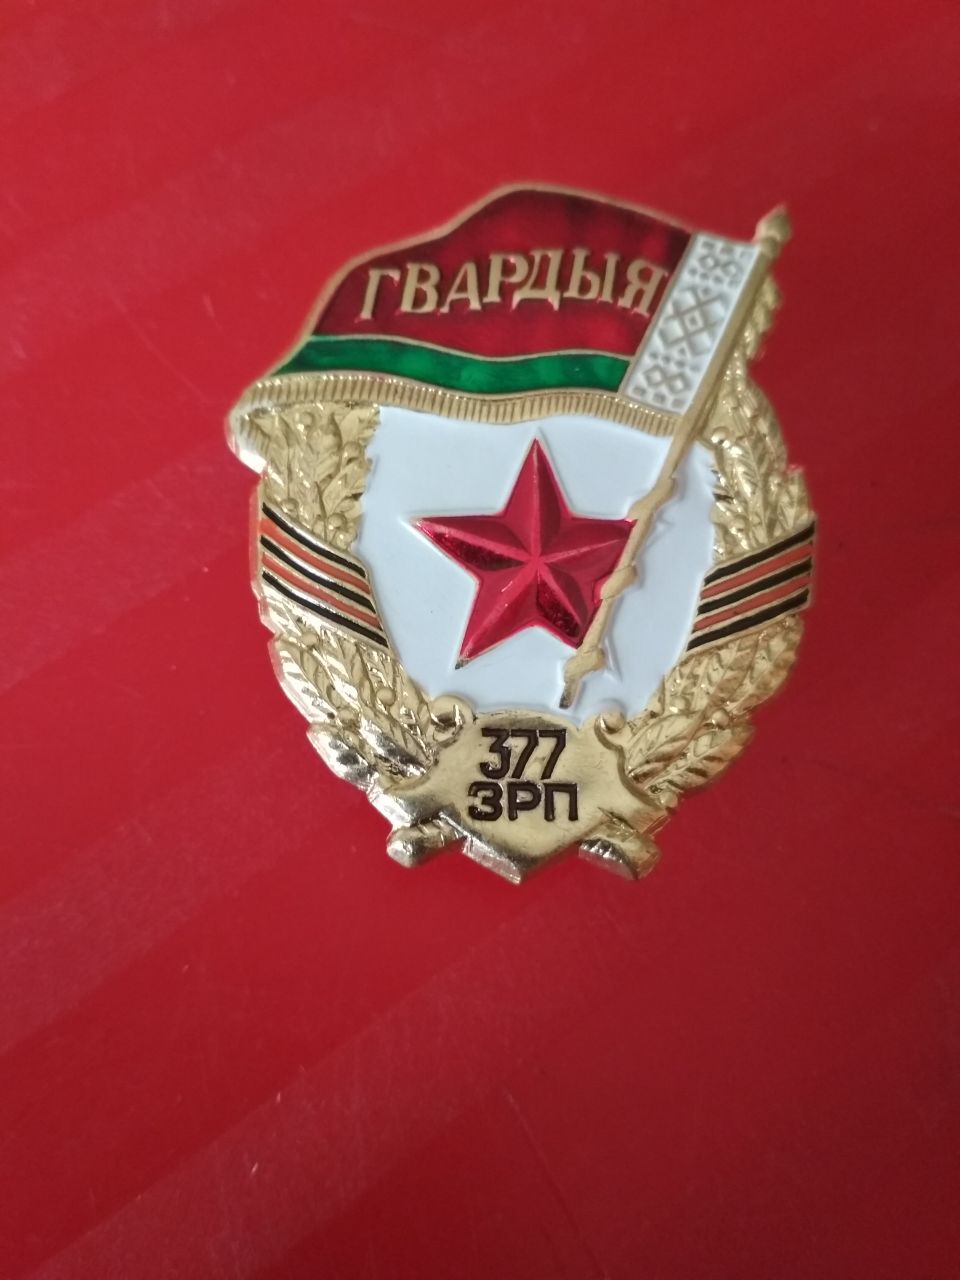 Знак «Гвардия  377 ЗРП»